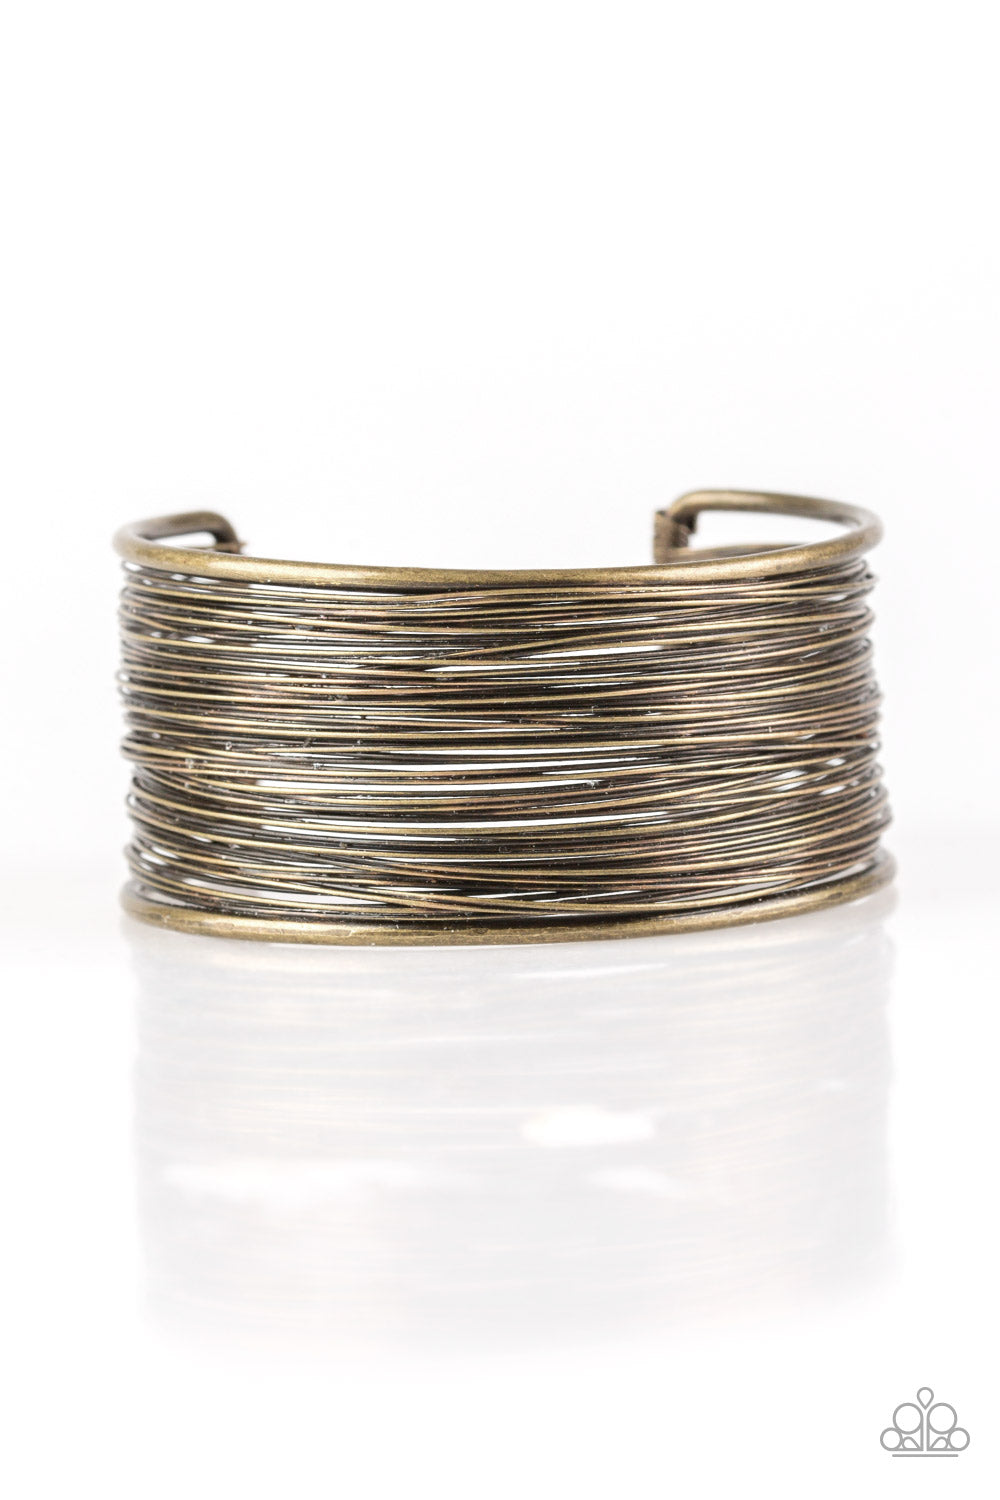 Paparazzi Wire Warrior - Brass - Cuff Bracelet - $5 Jewelry With Ashley Swint